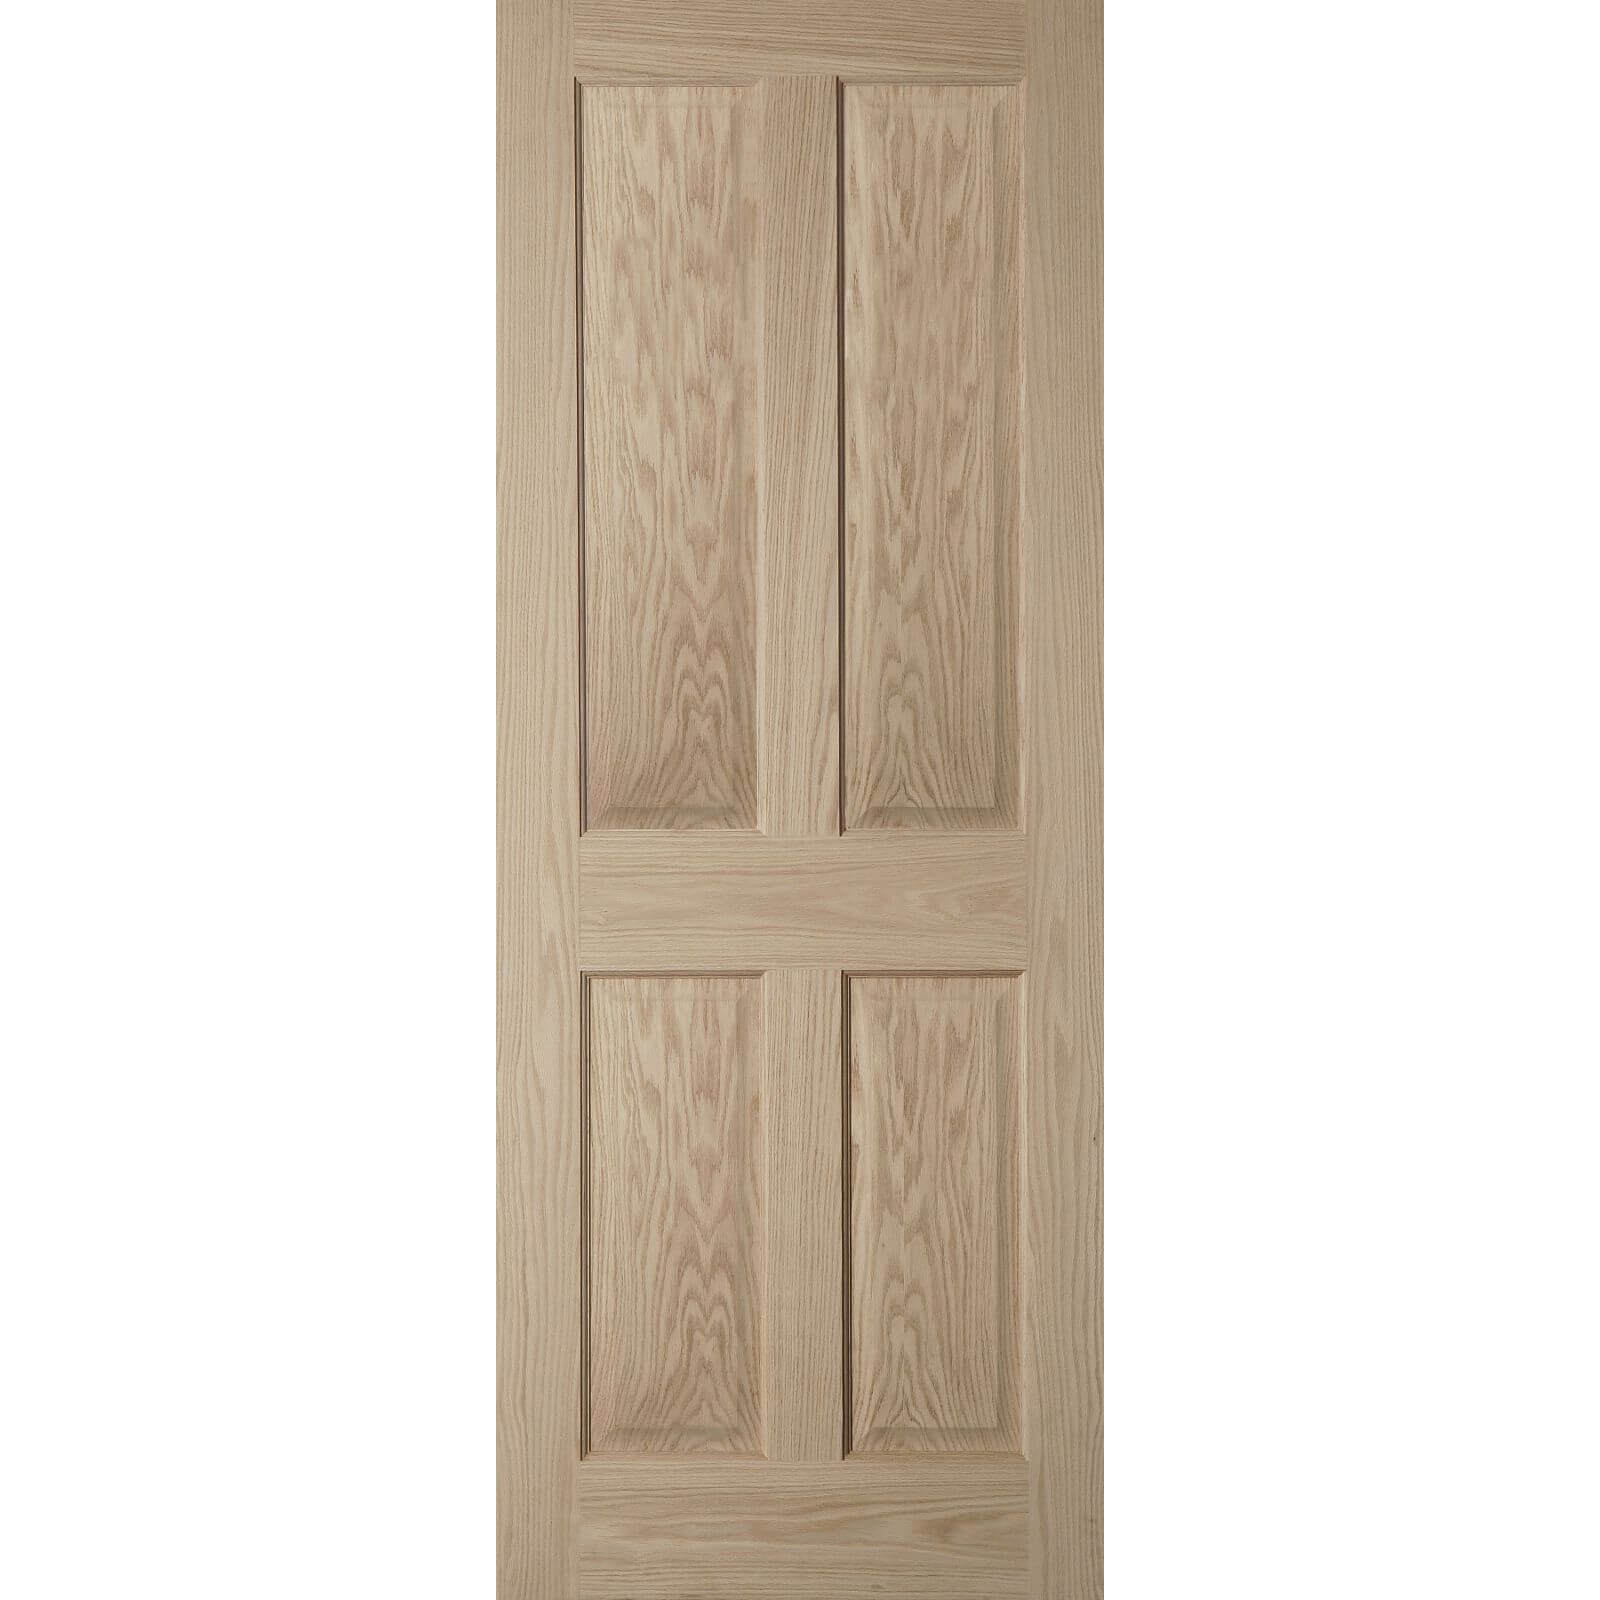 Photo of 4 Panel Oak Veneer Internal Fire Door - 762mm Wide